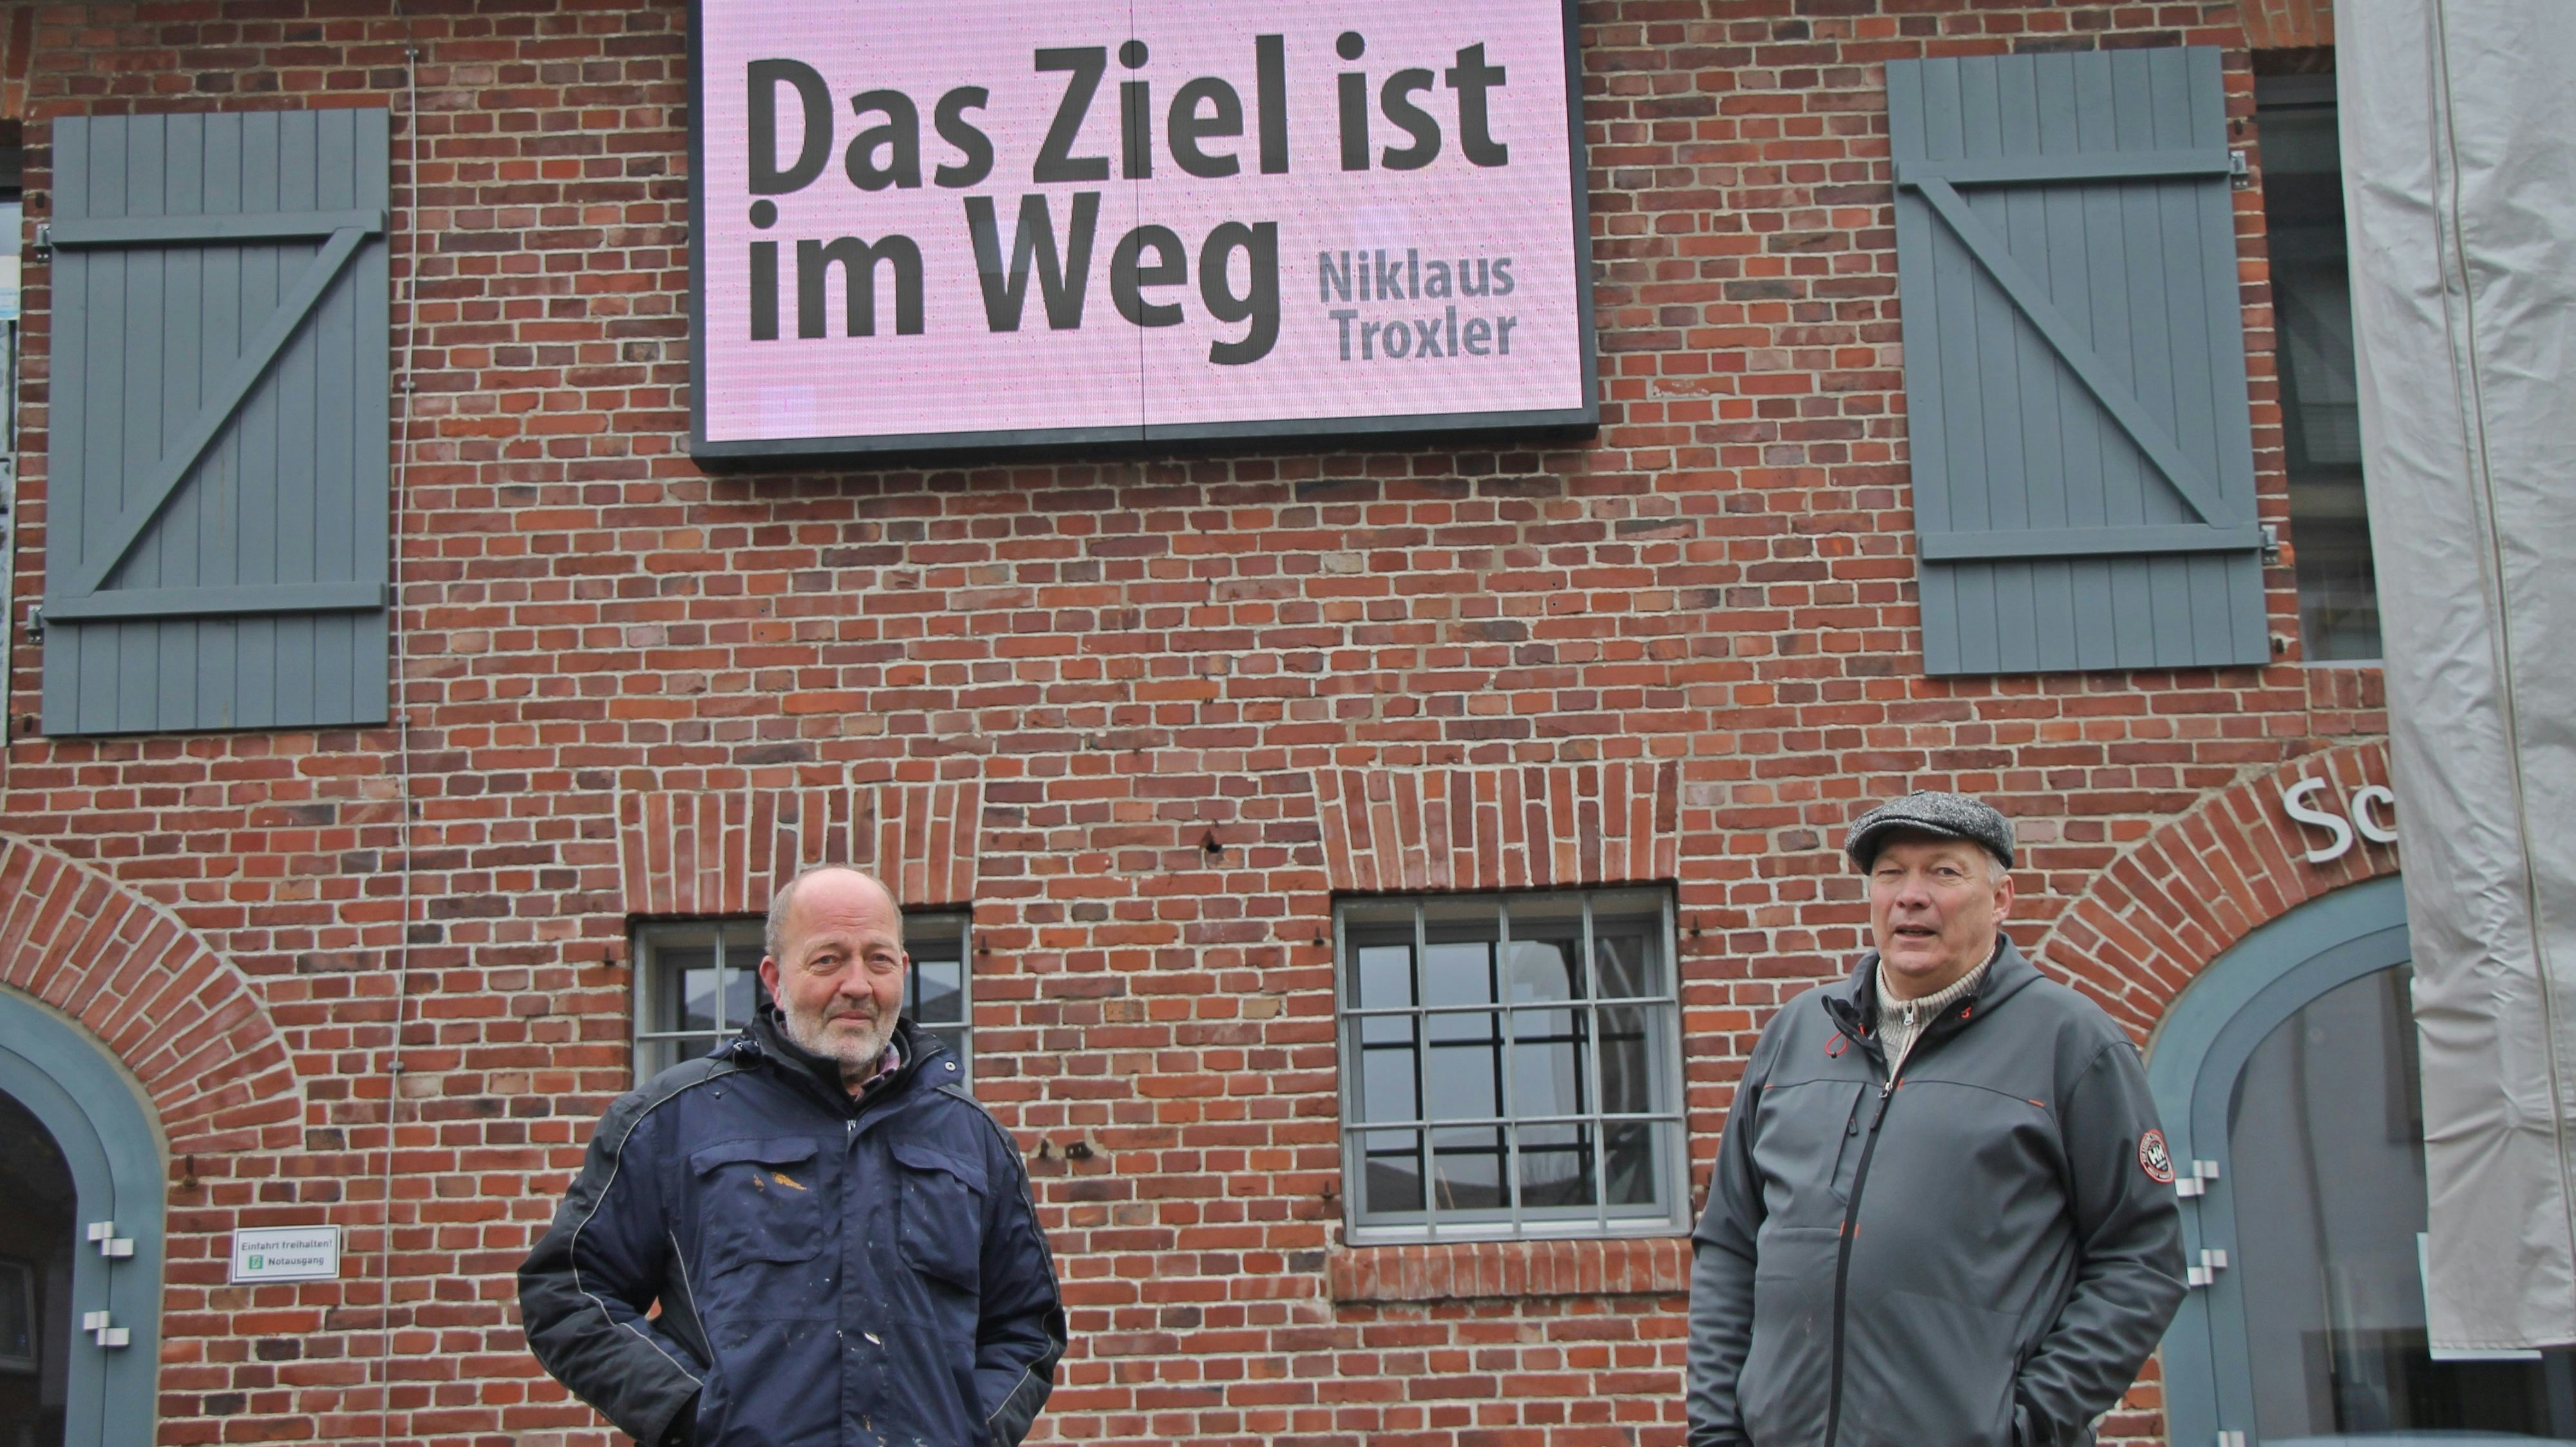 In guter Hoffnung: Norbert Enker (links) und Matthias Stöver freuen sich auf weitere Sprüche, Gedichte und Aphorismen für die LED-Leinwand an der Scheune Leiber.&nbsp; Foto: Oevermann